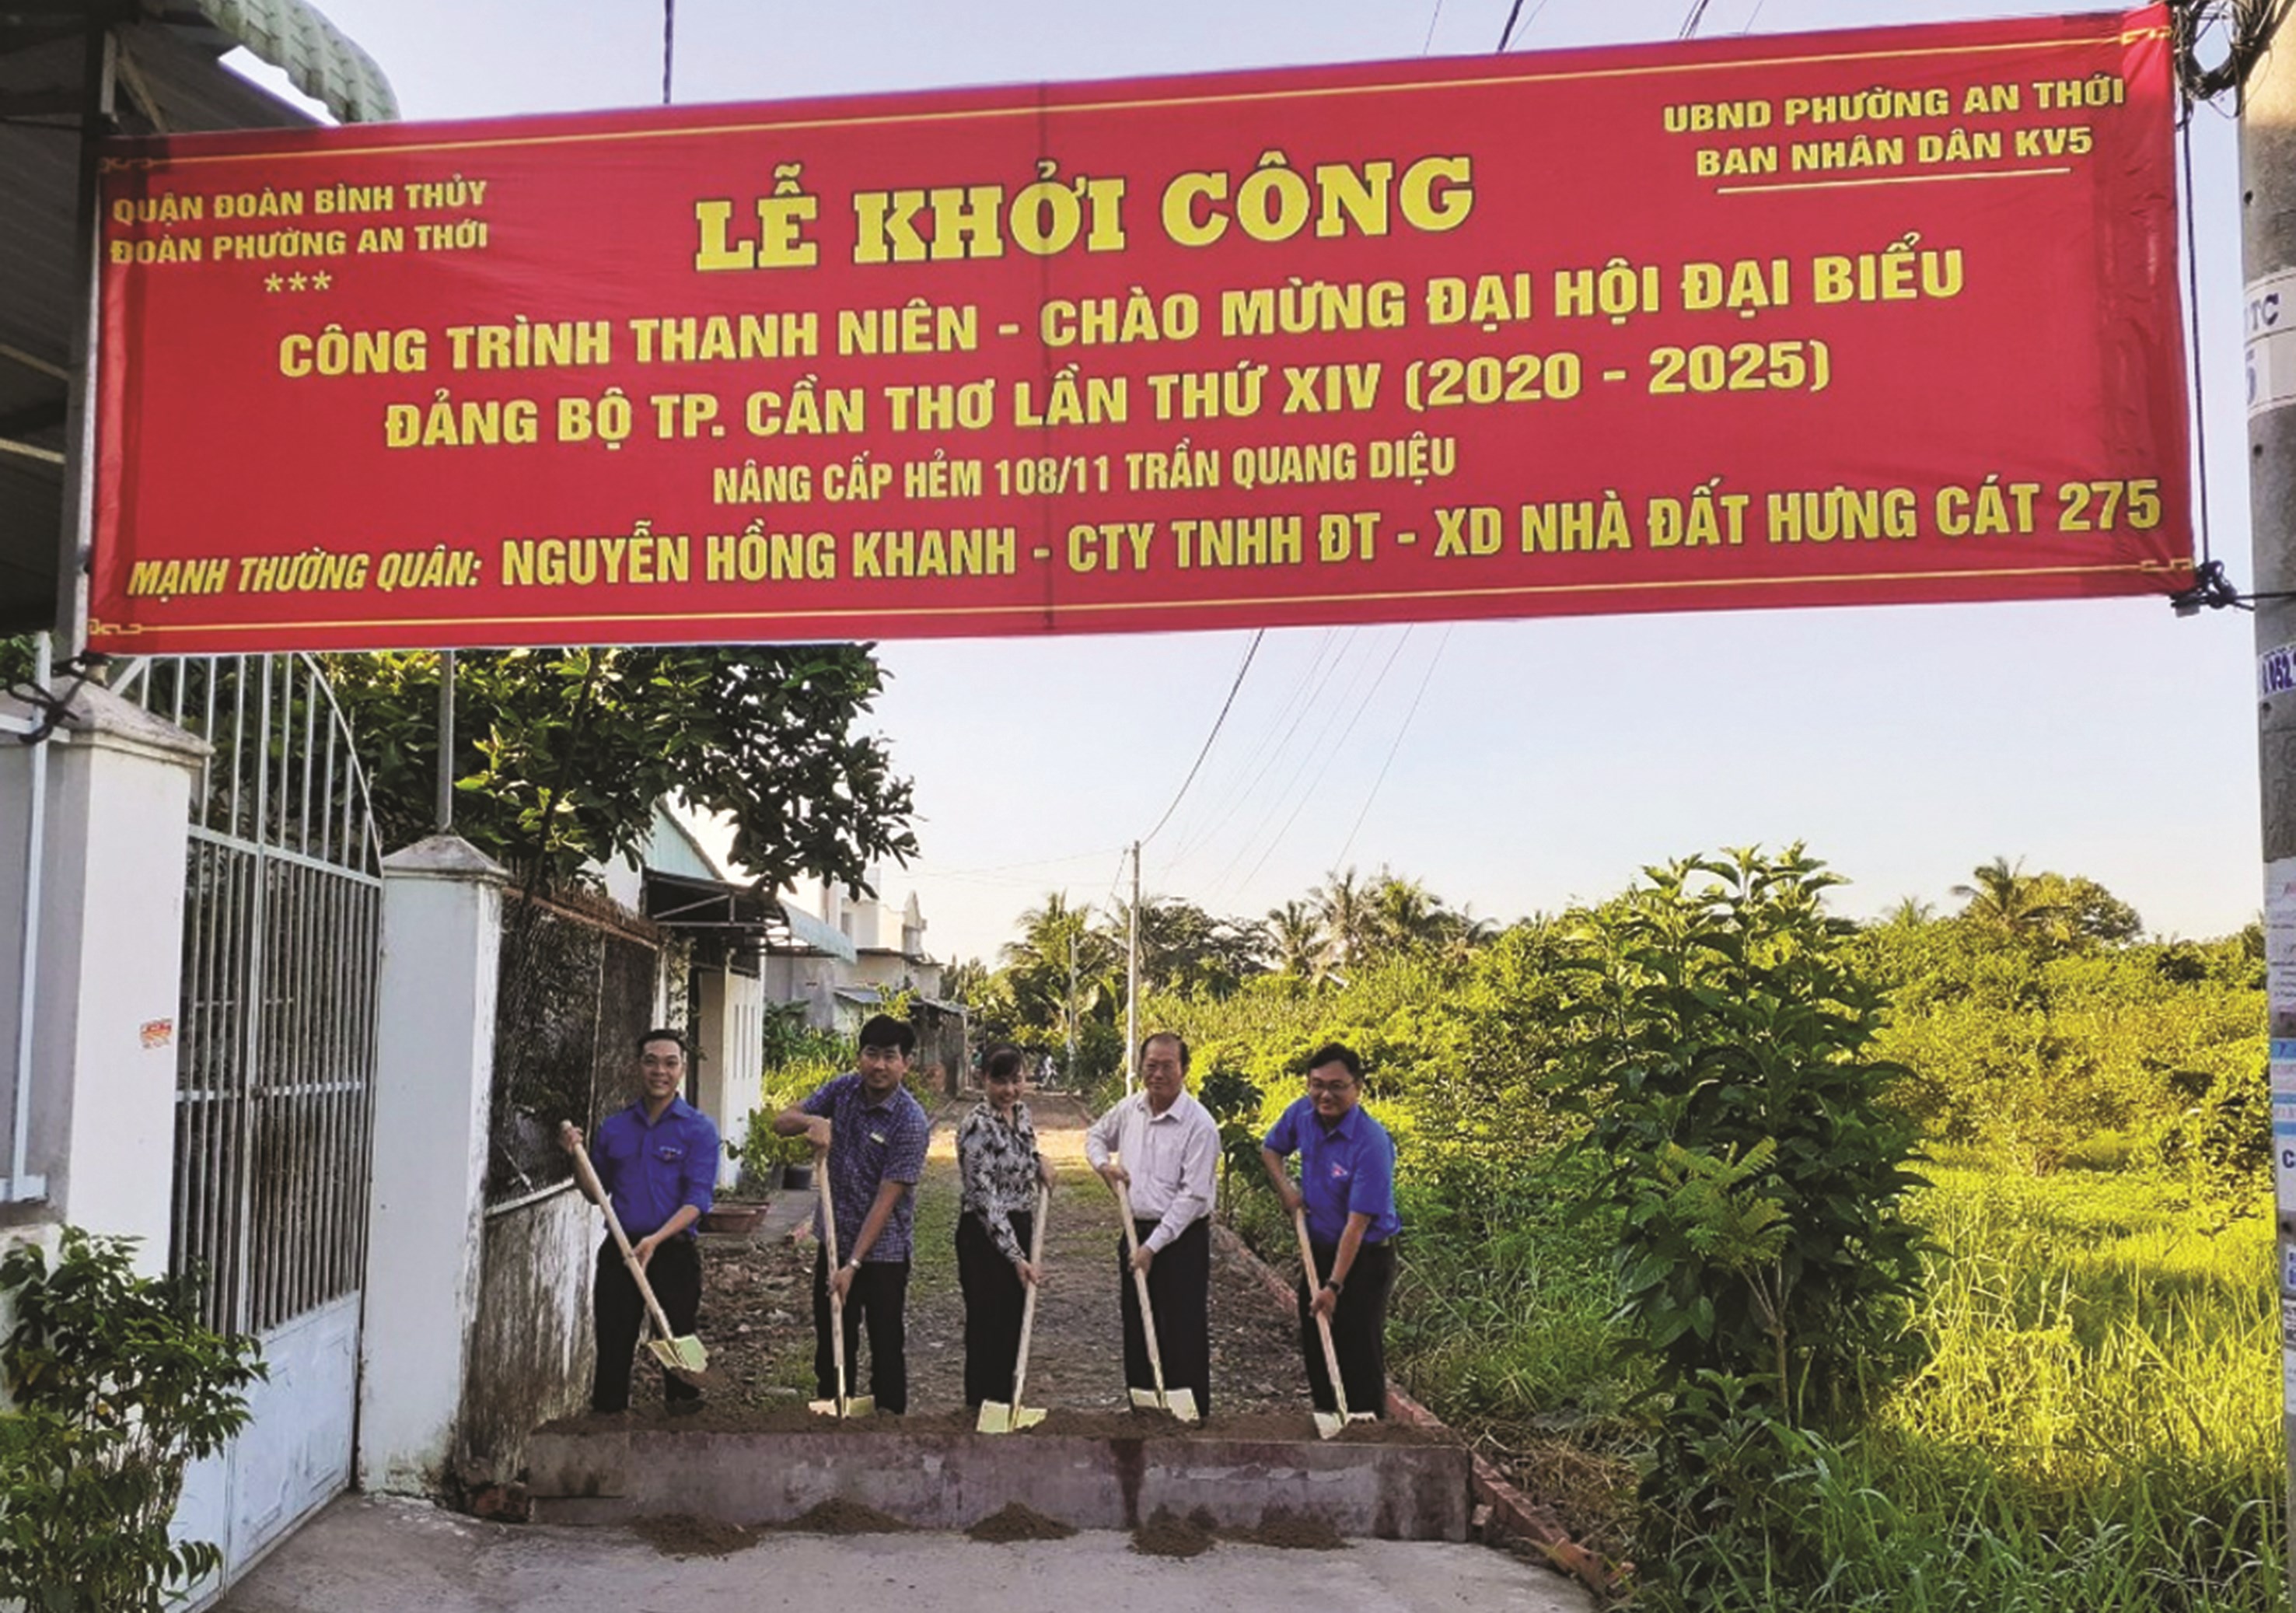 Lễ khởi công công trình nâng cấp hẻm 108/11 Trần Quang Diệu, khu vực 5, phường An Thới, công trình chào mừng Đại hội Đảng bộ Thành phố lần thứ XIV.